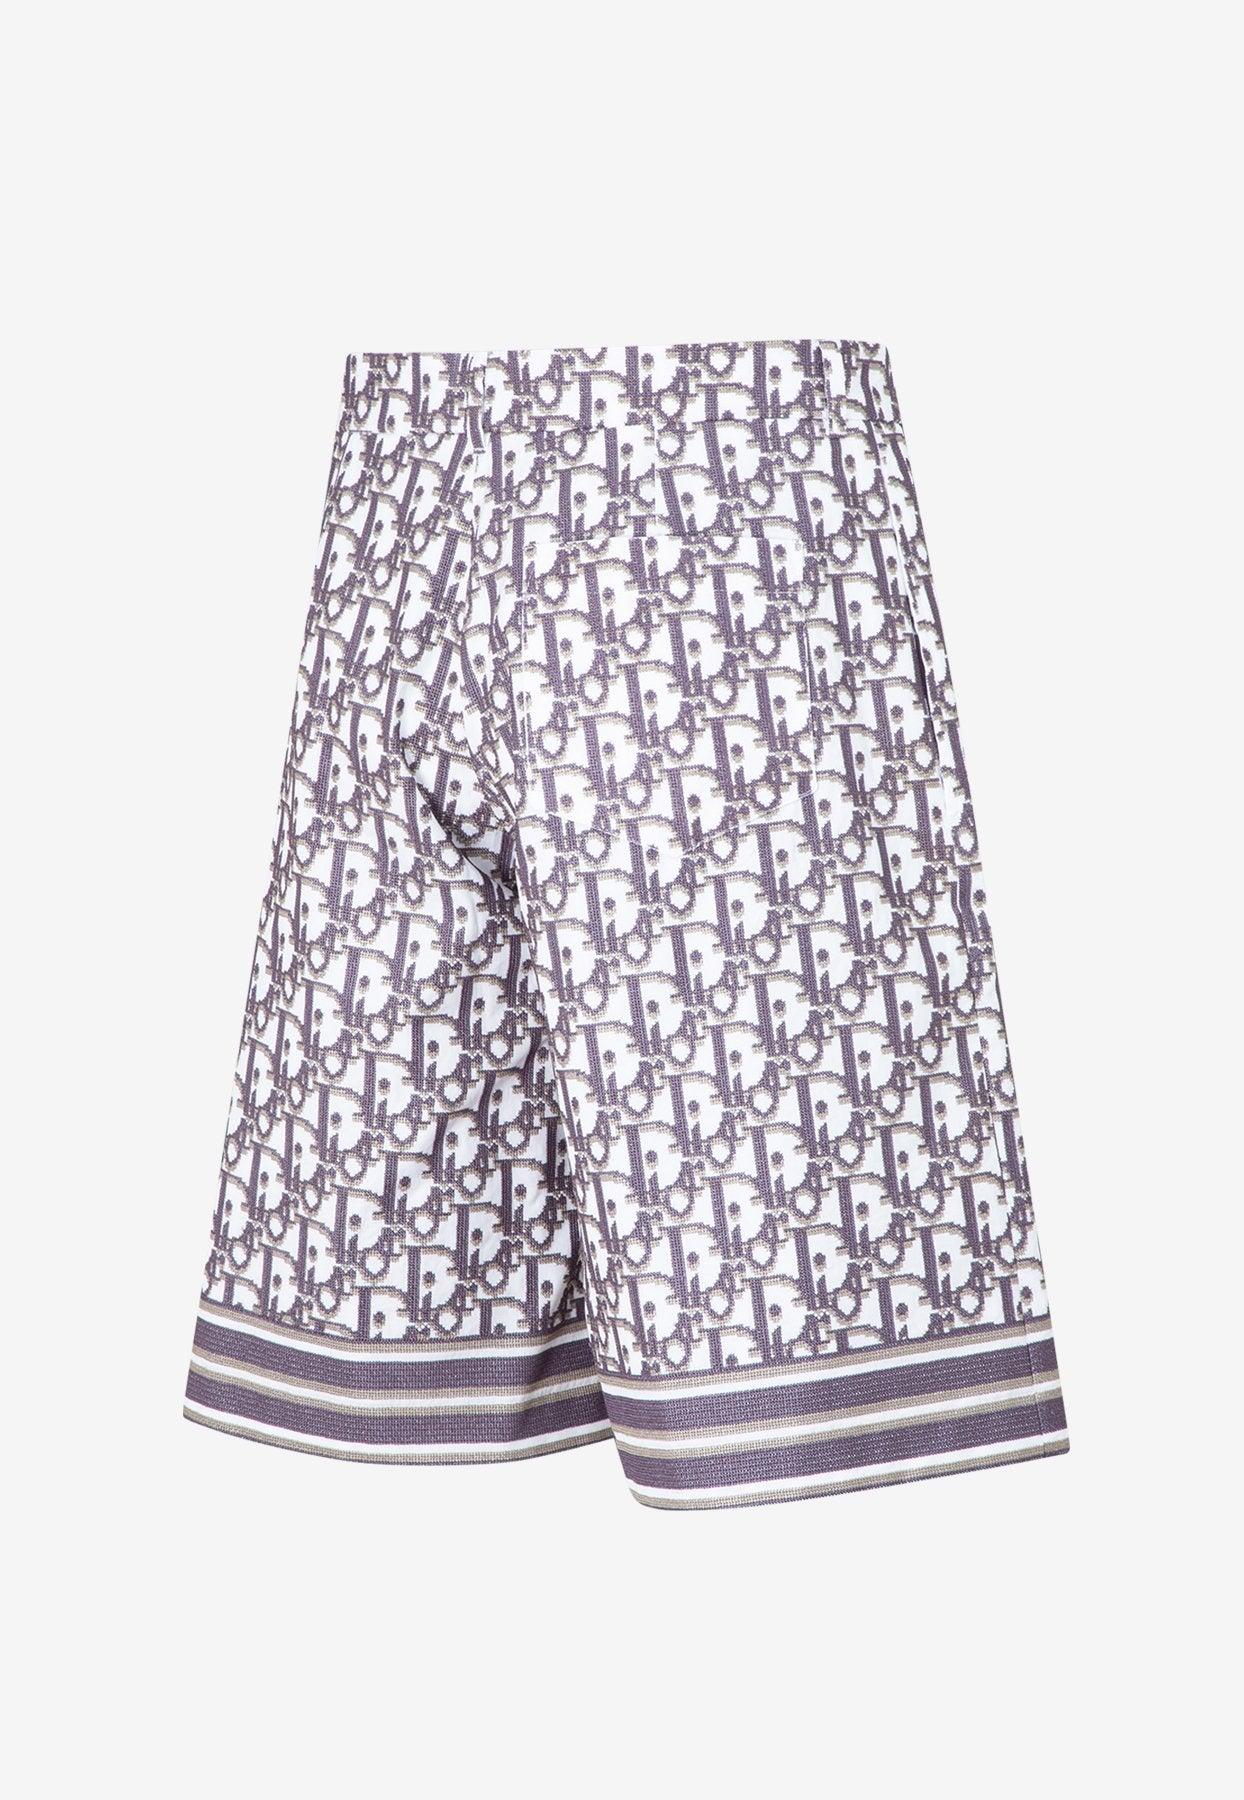 Dior Dior Oblique Shorts for Men